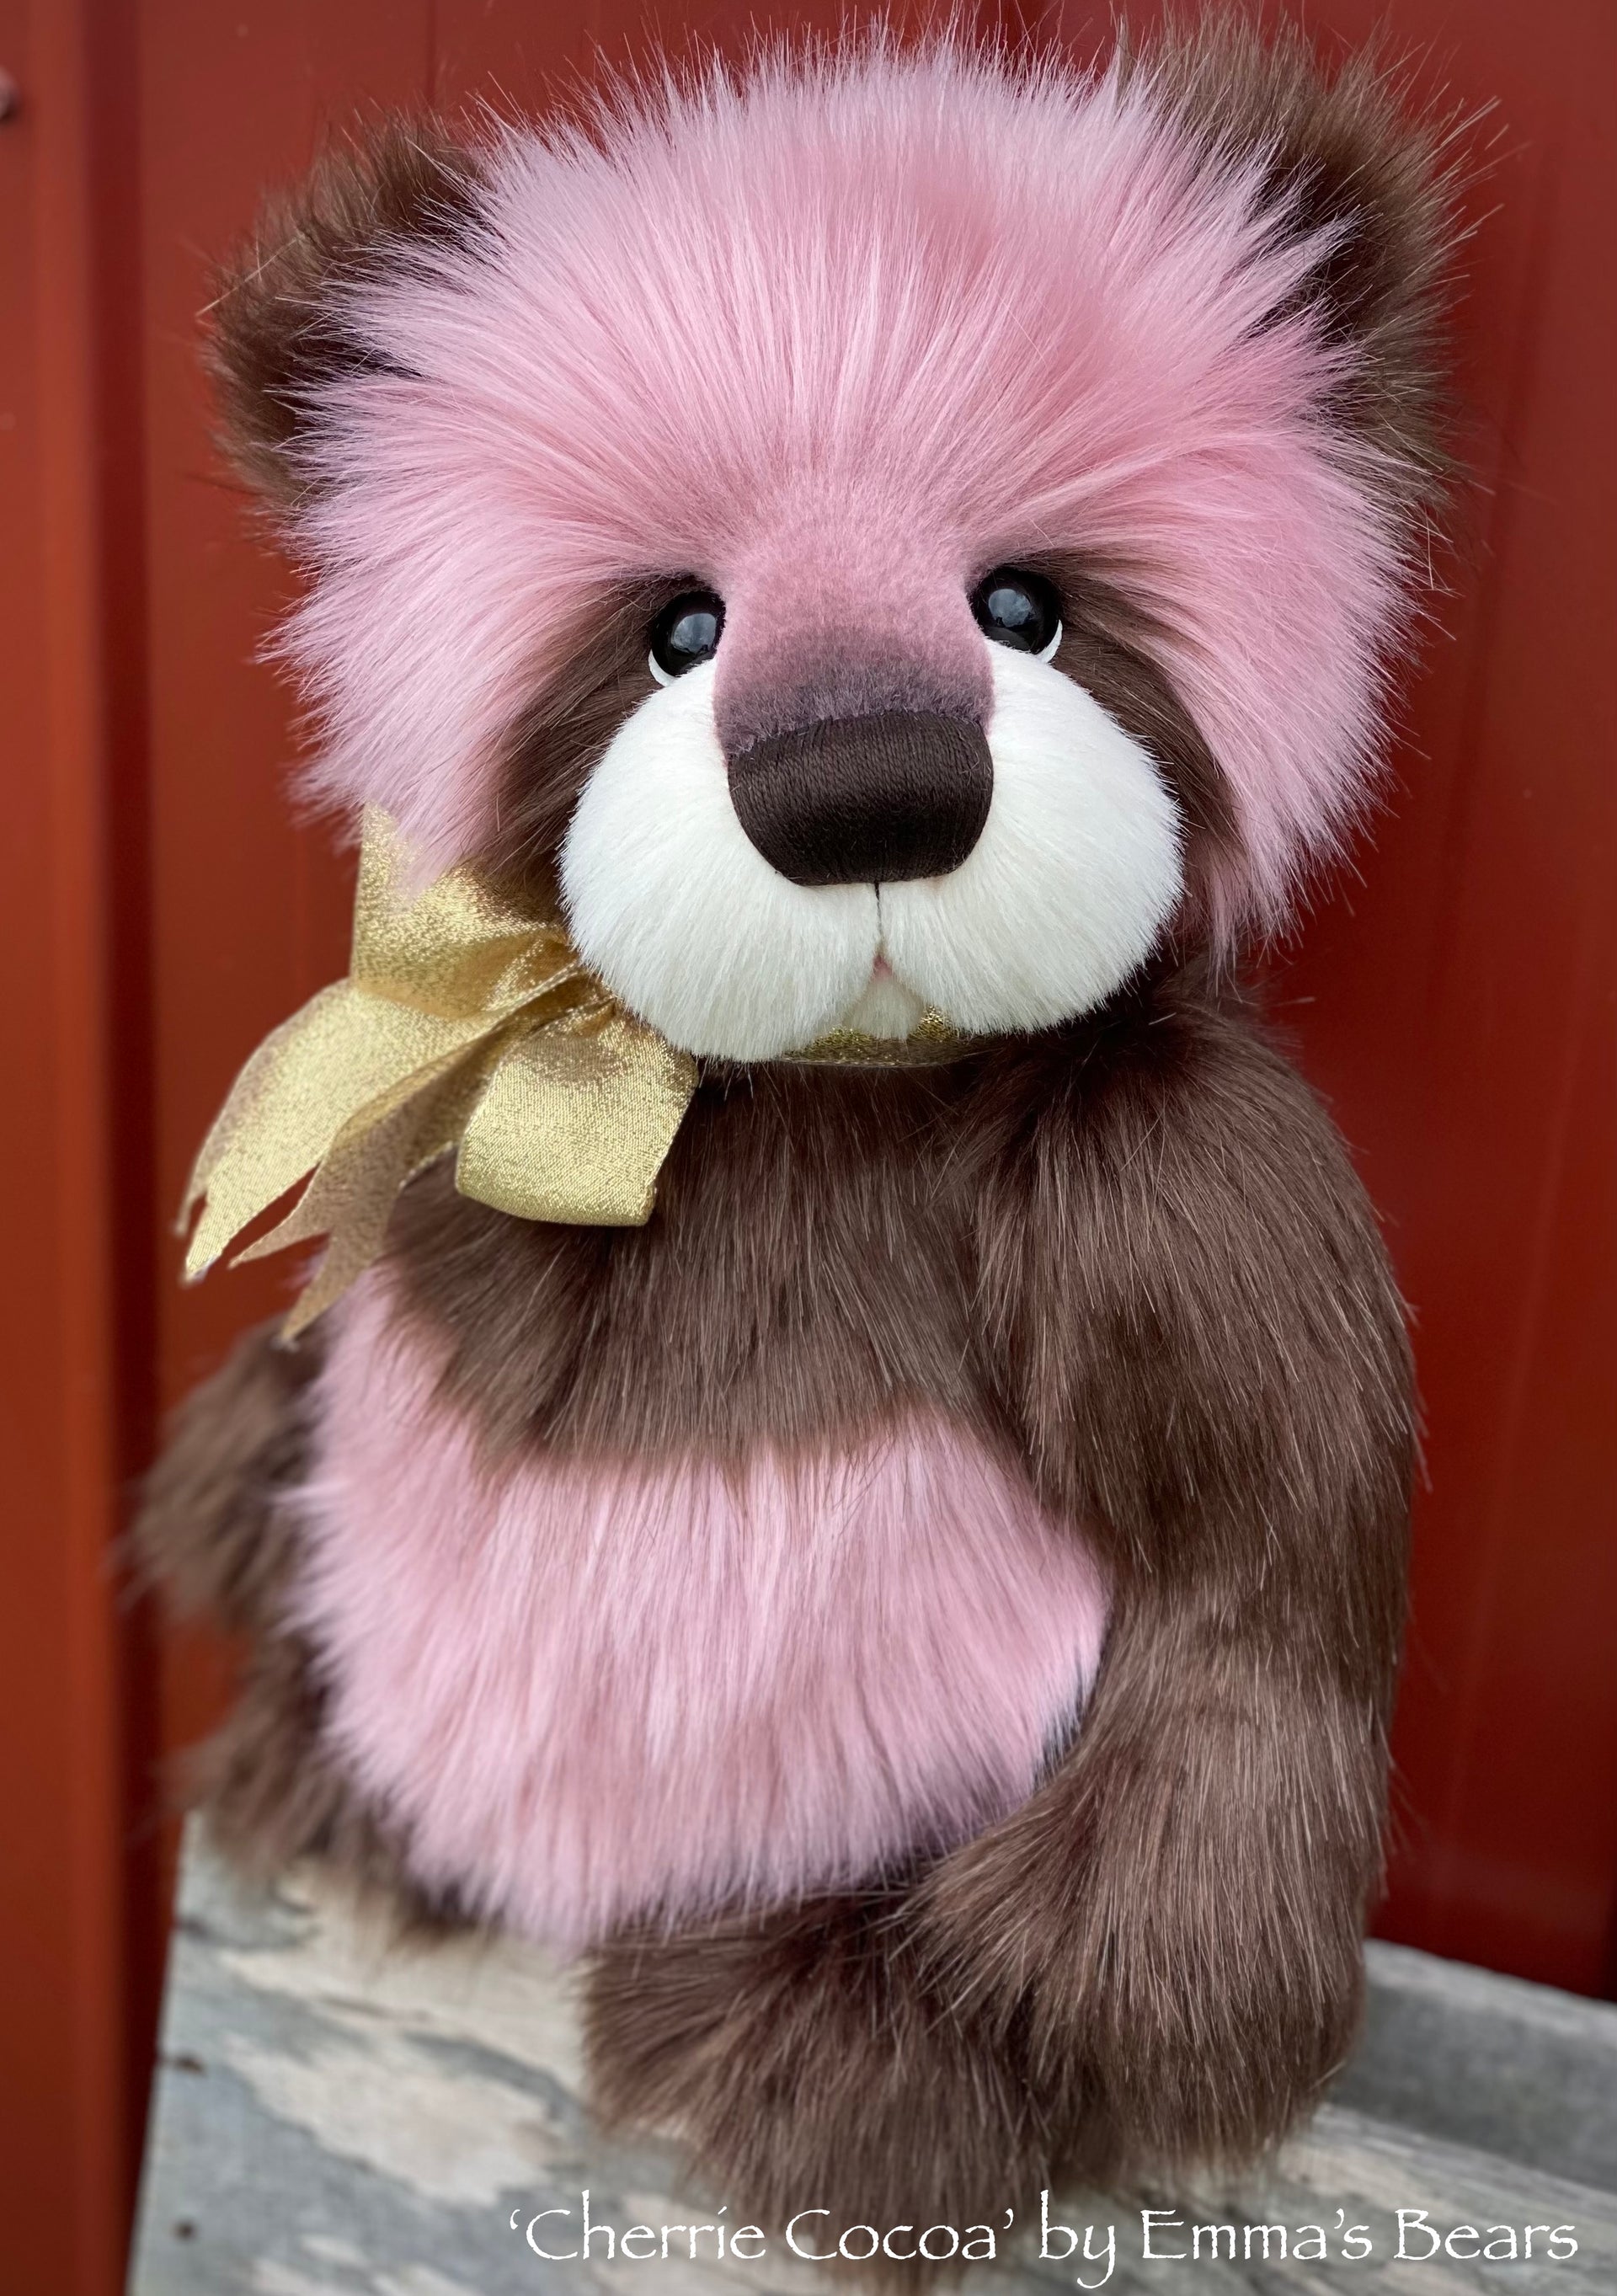 Cherrie Cocoa - 17" faux fur bear by Emmas Bears - OOAK